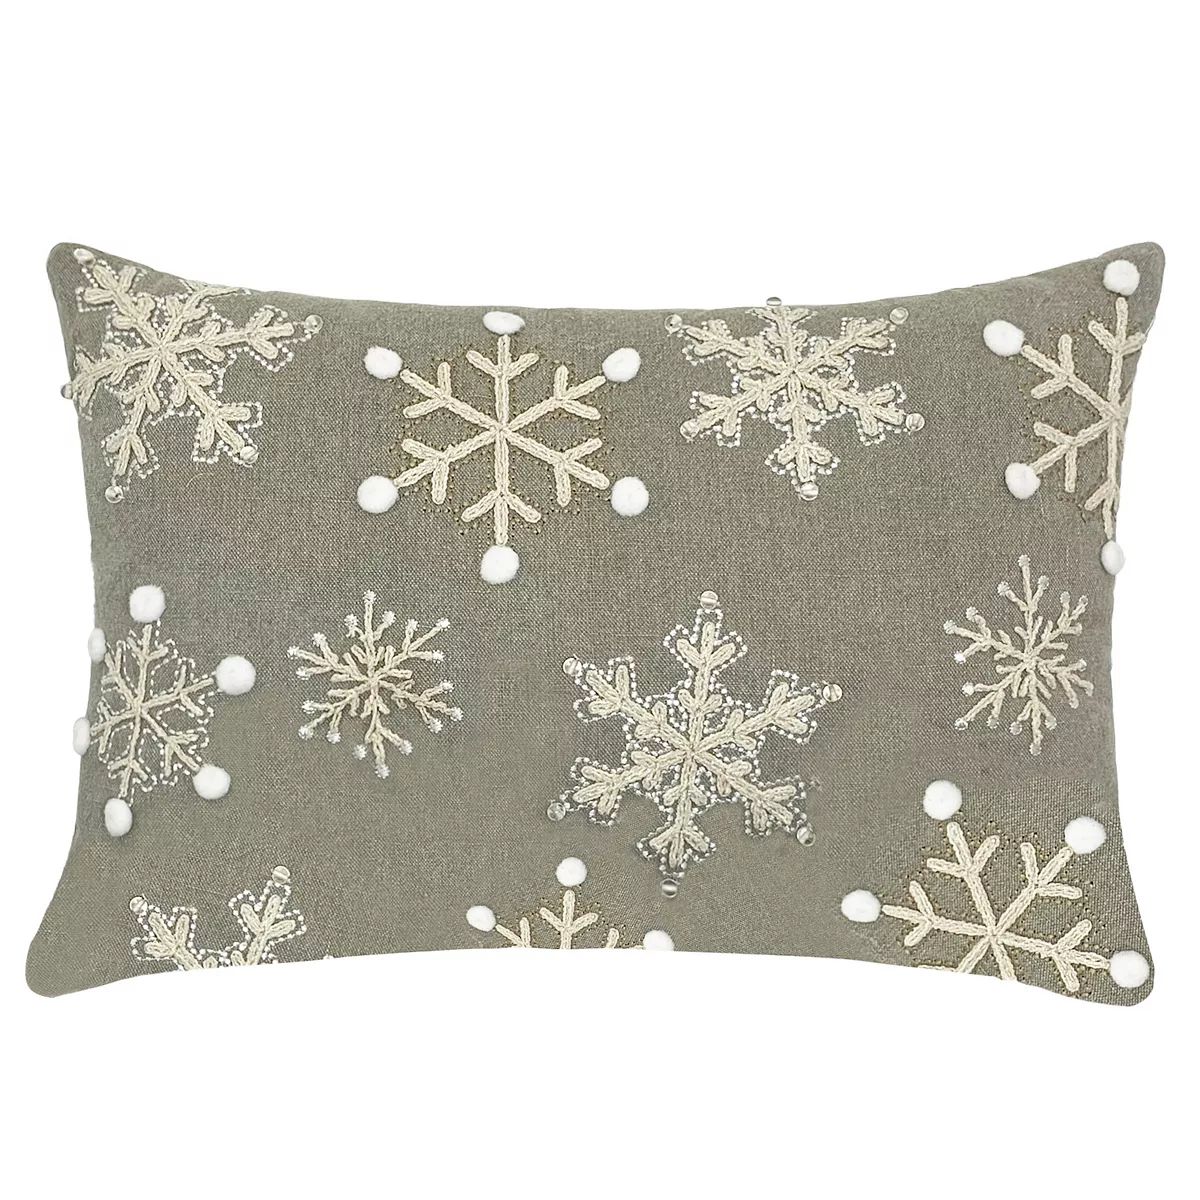 St. Nicholas Square® Beaded Snowflakes Throw Pillow | Kohl's